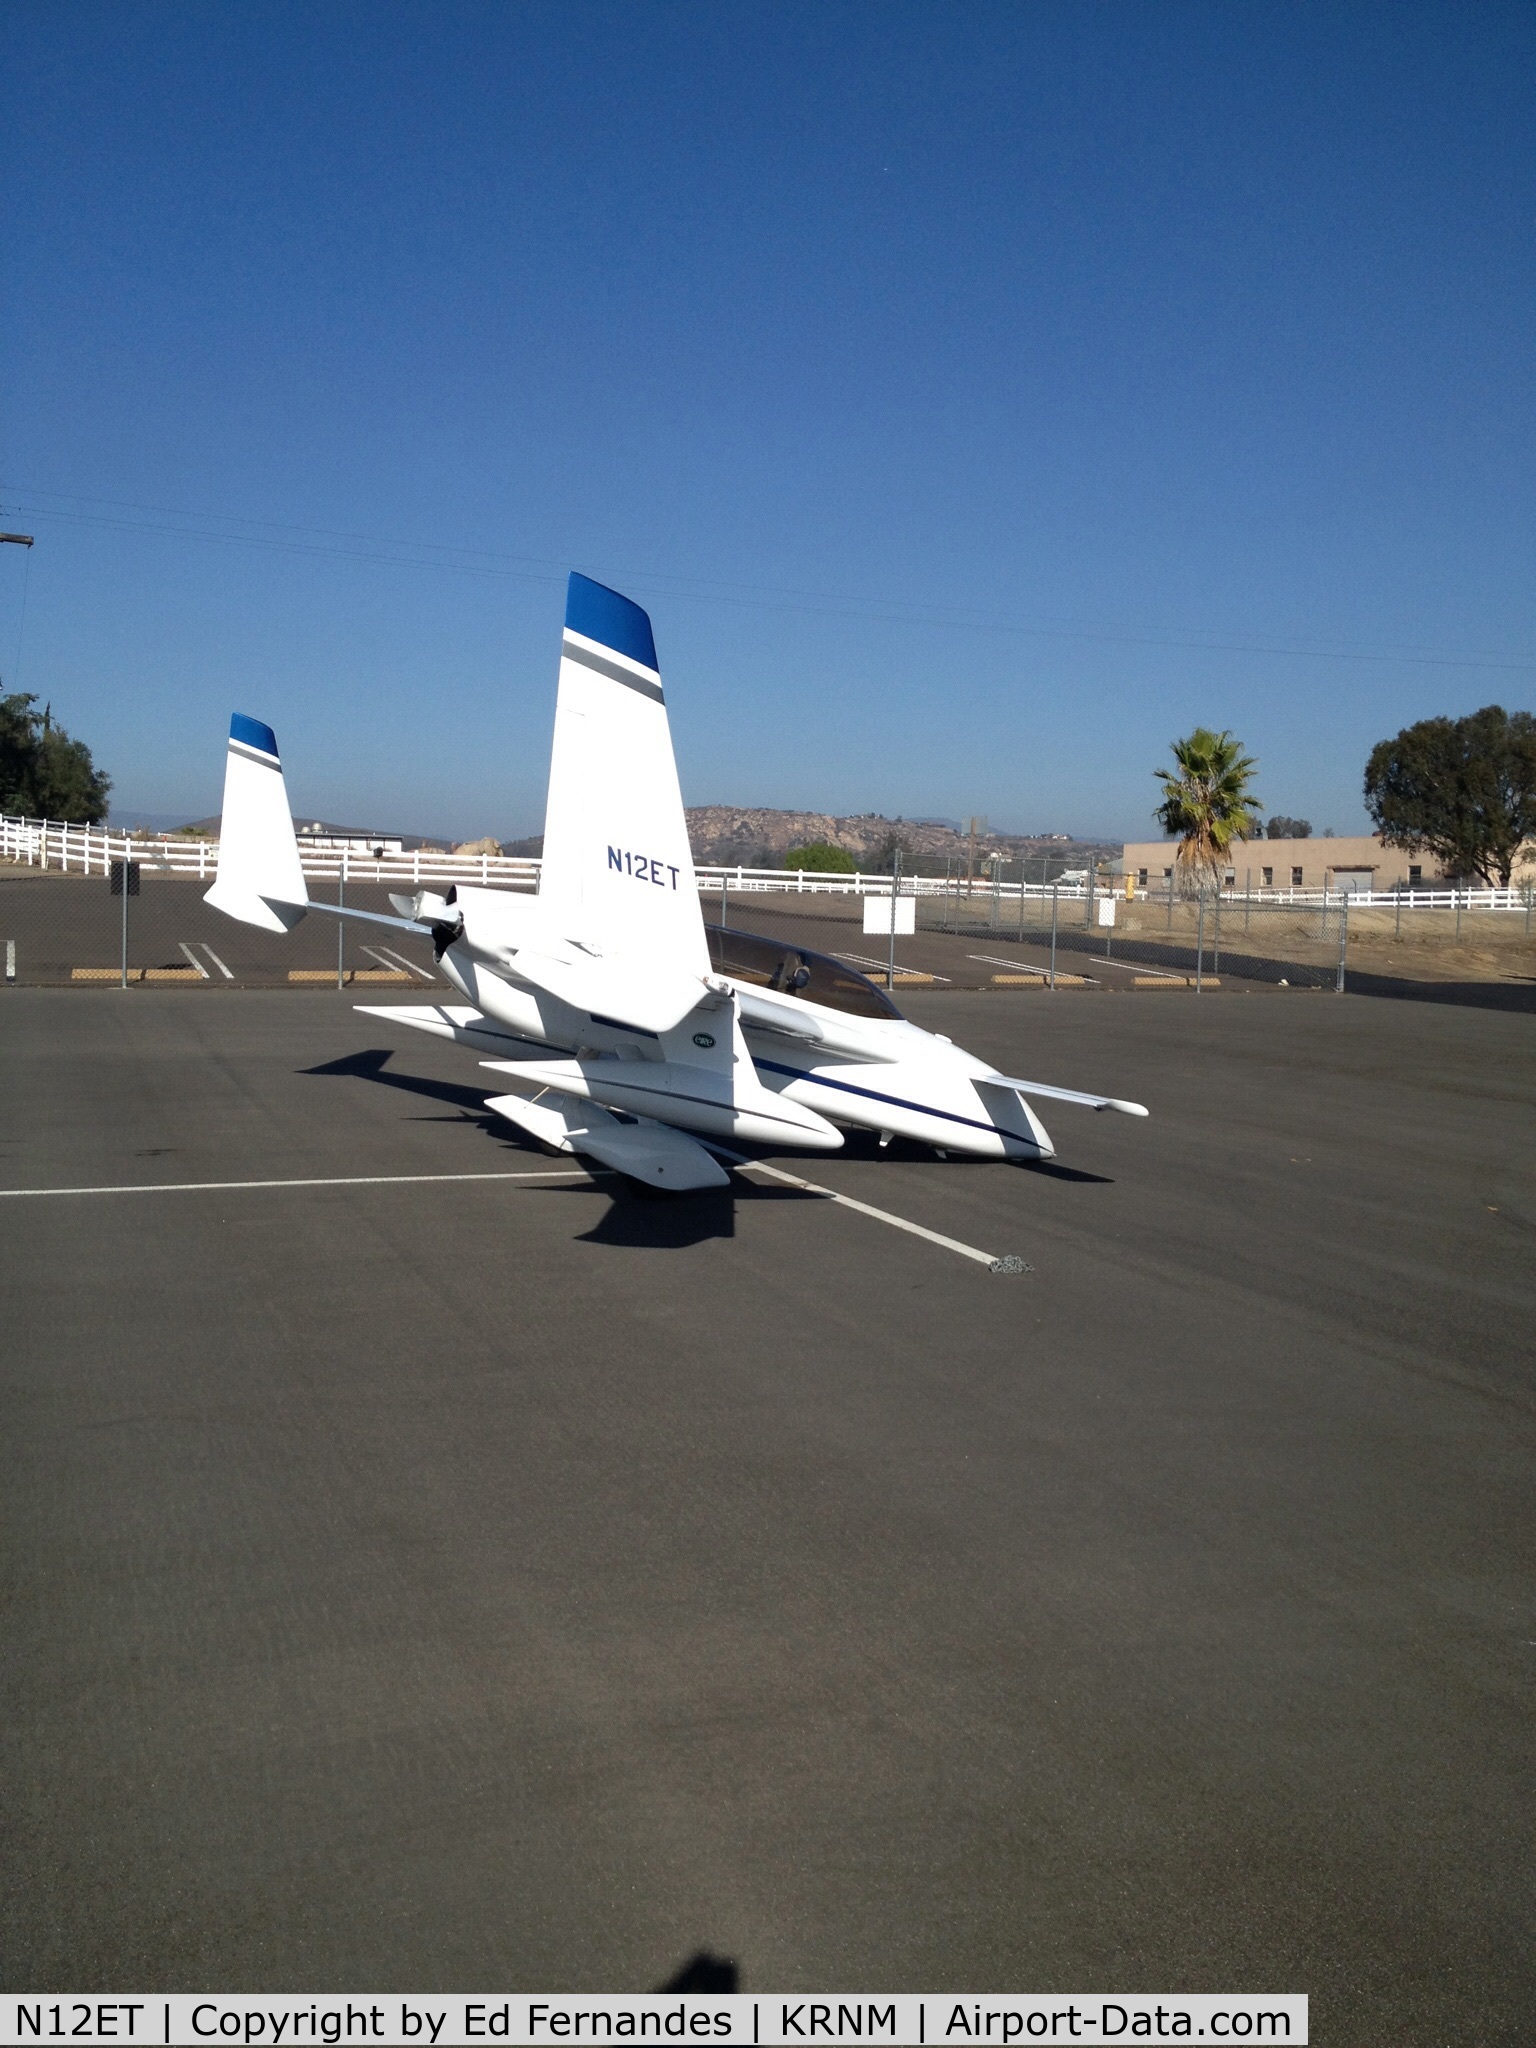 N12ET, Rutan Long-EZ C/N 1333, Parked at Ramona airport. KRNM.  Great looking plane!